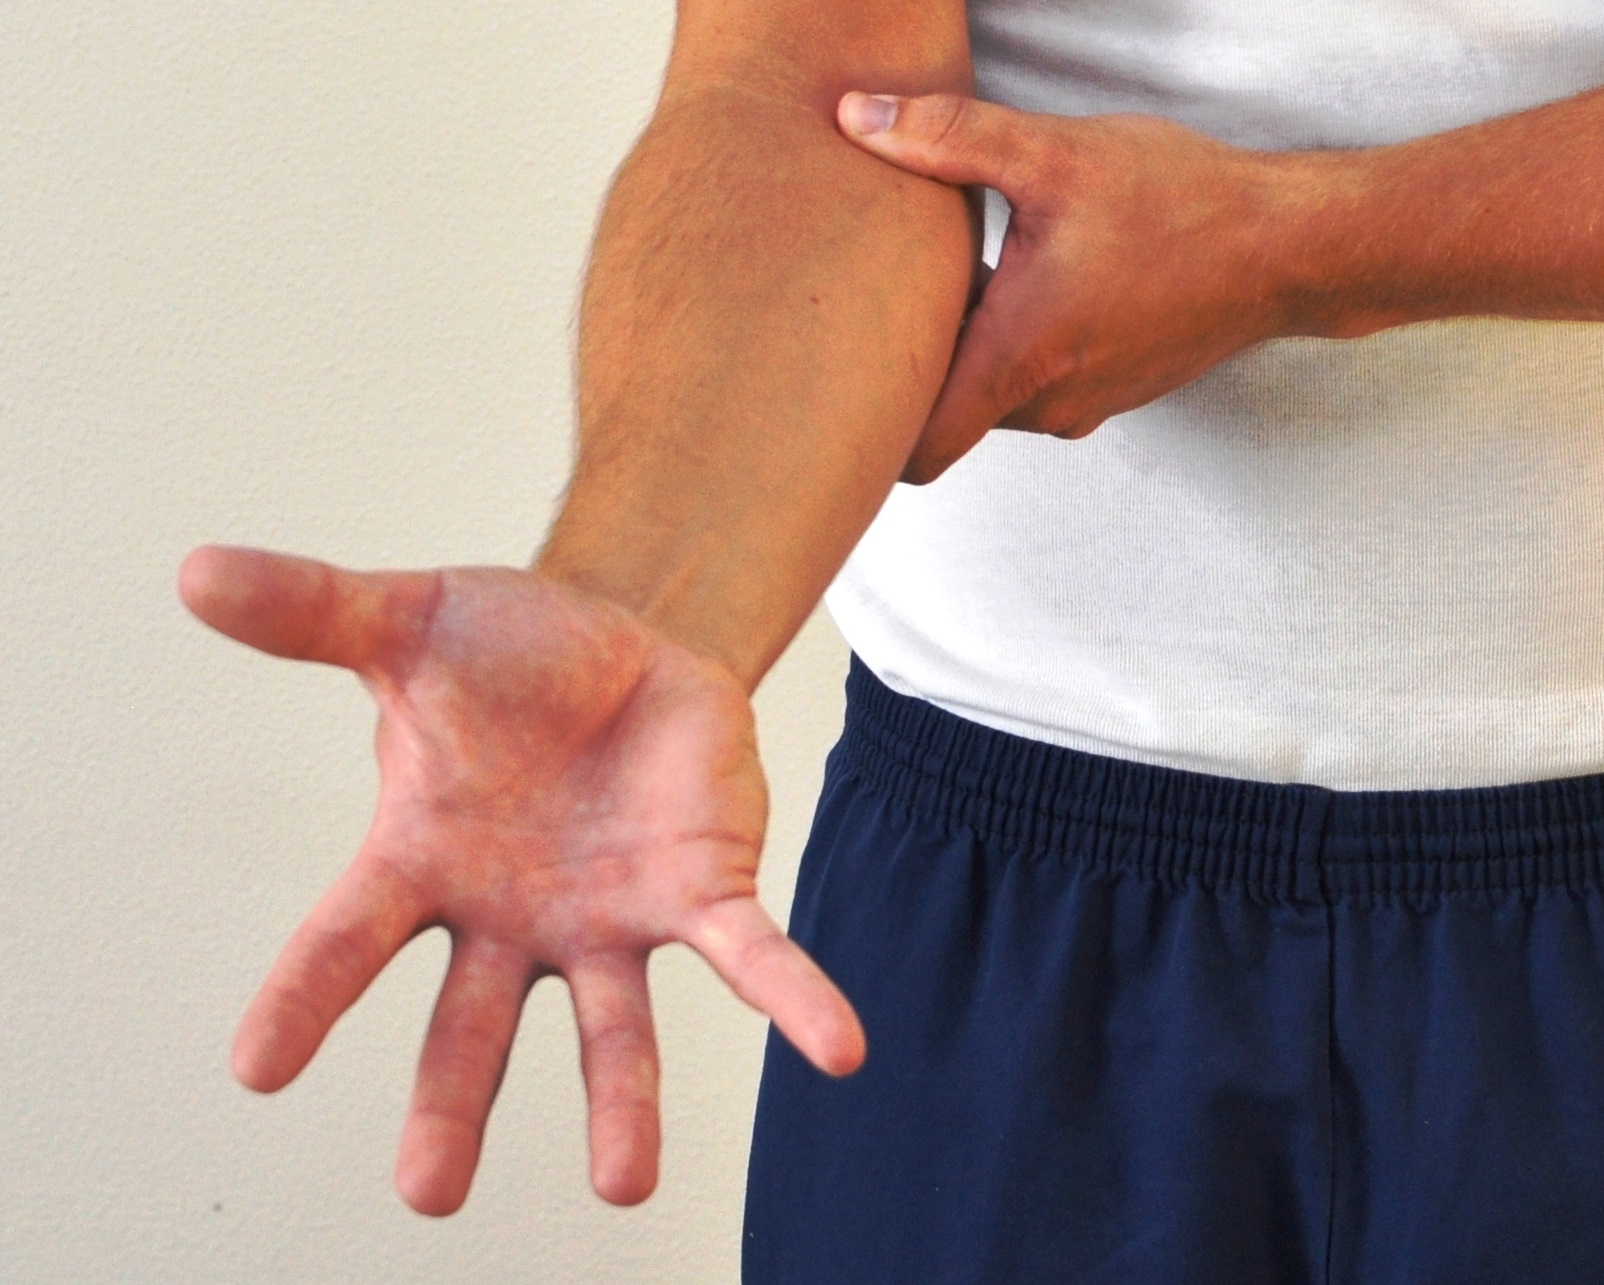 Strakt underarm - fingrene er strakte og spredte.